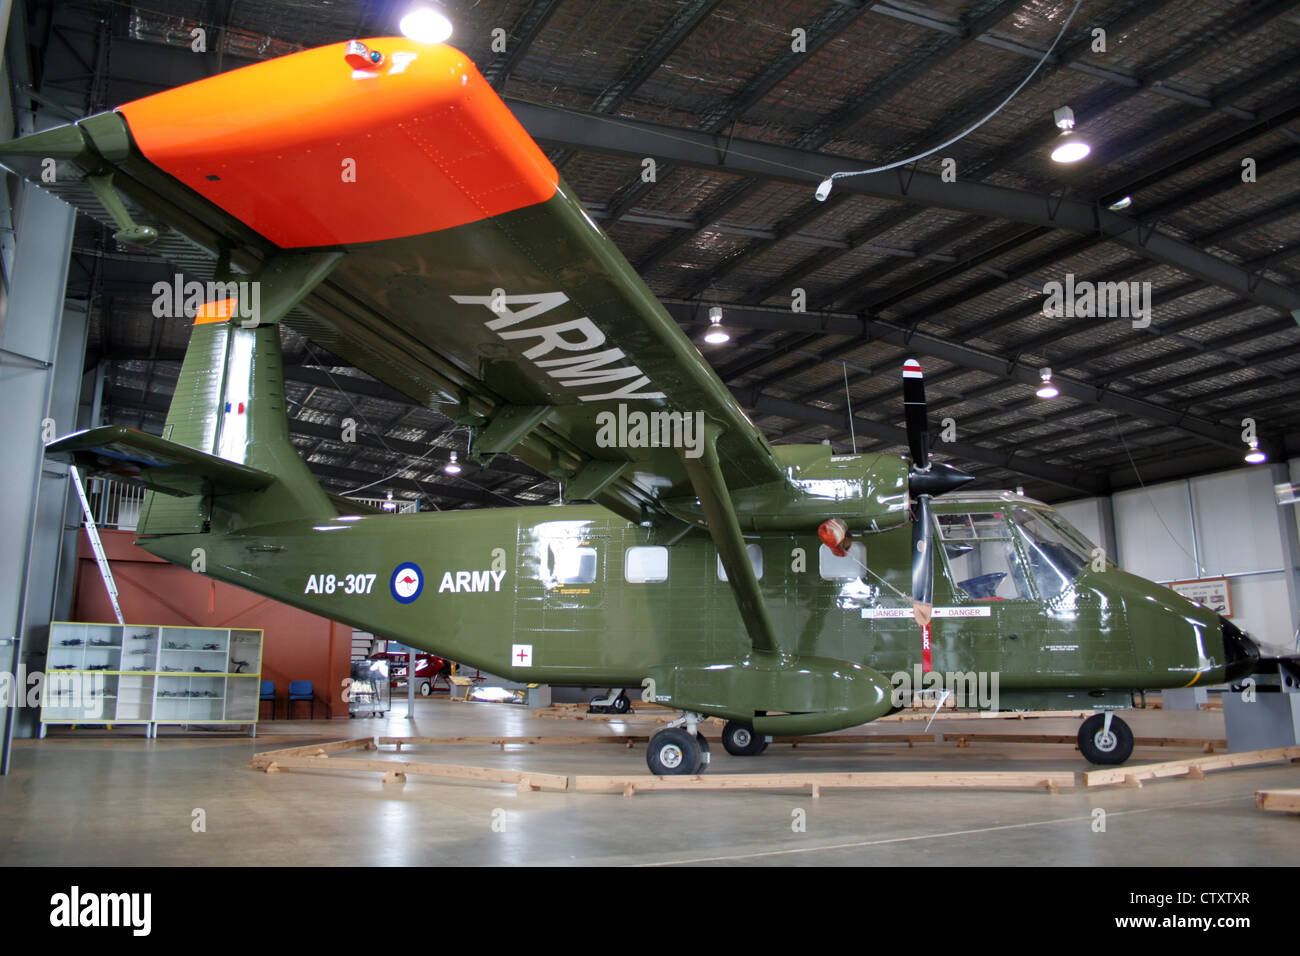 Gaf nomad n 22 b angezeigt, die im Museum der australischen Armee fliegen. oakey, Queensland, Australien Stockfoto